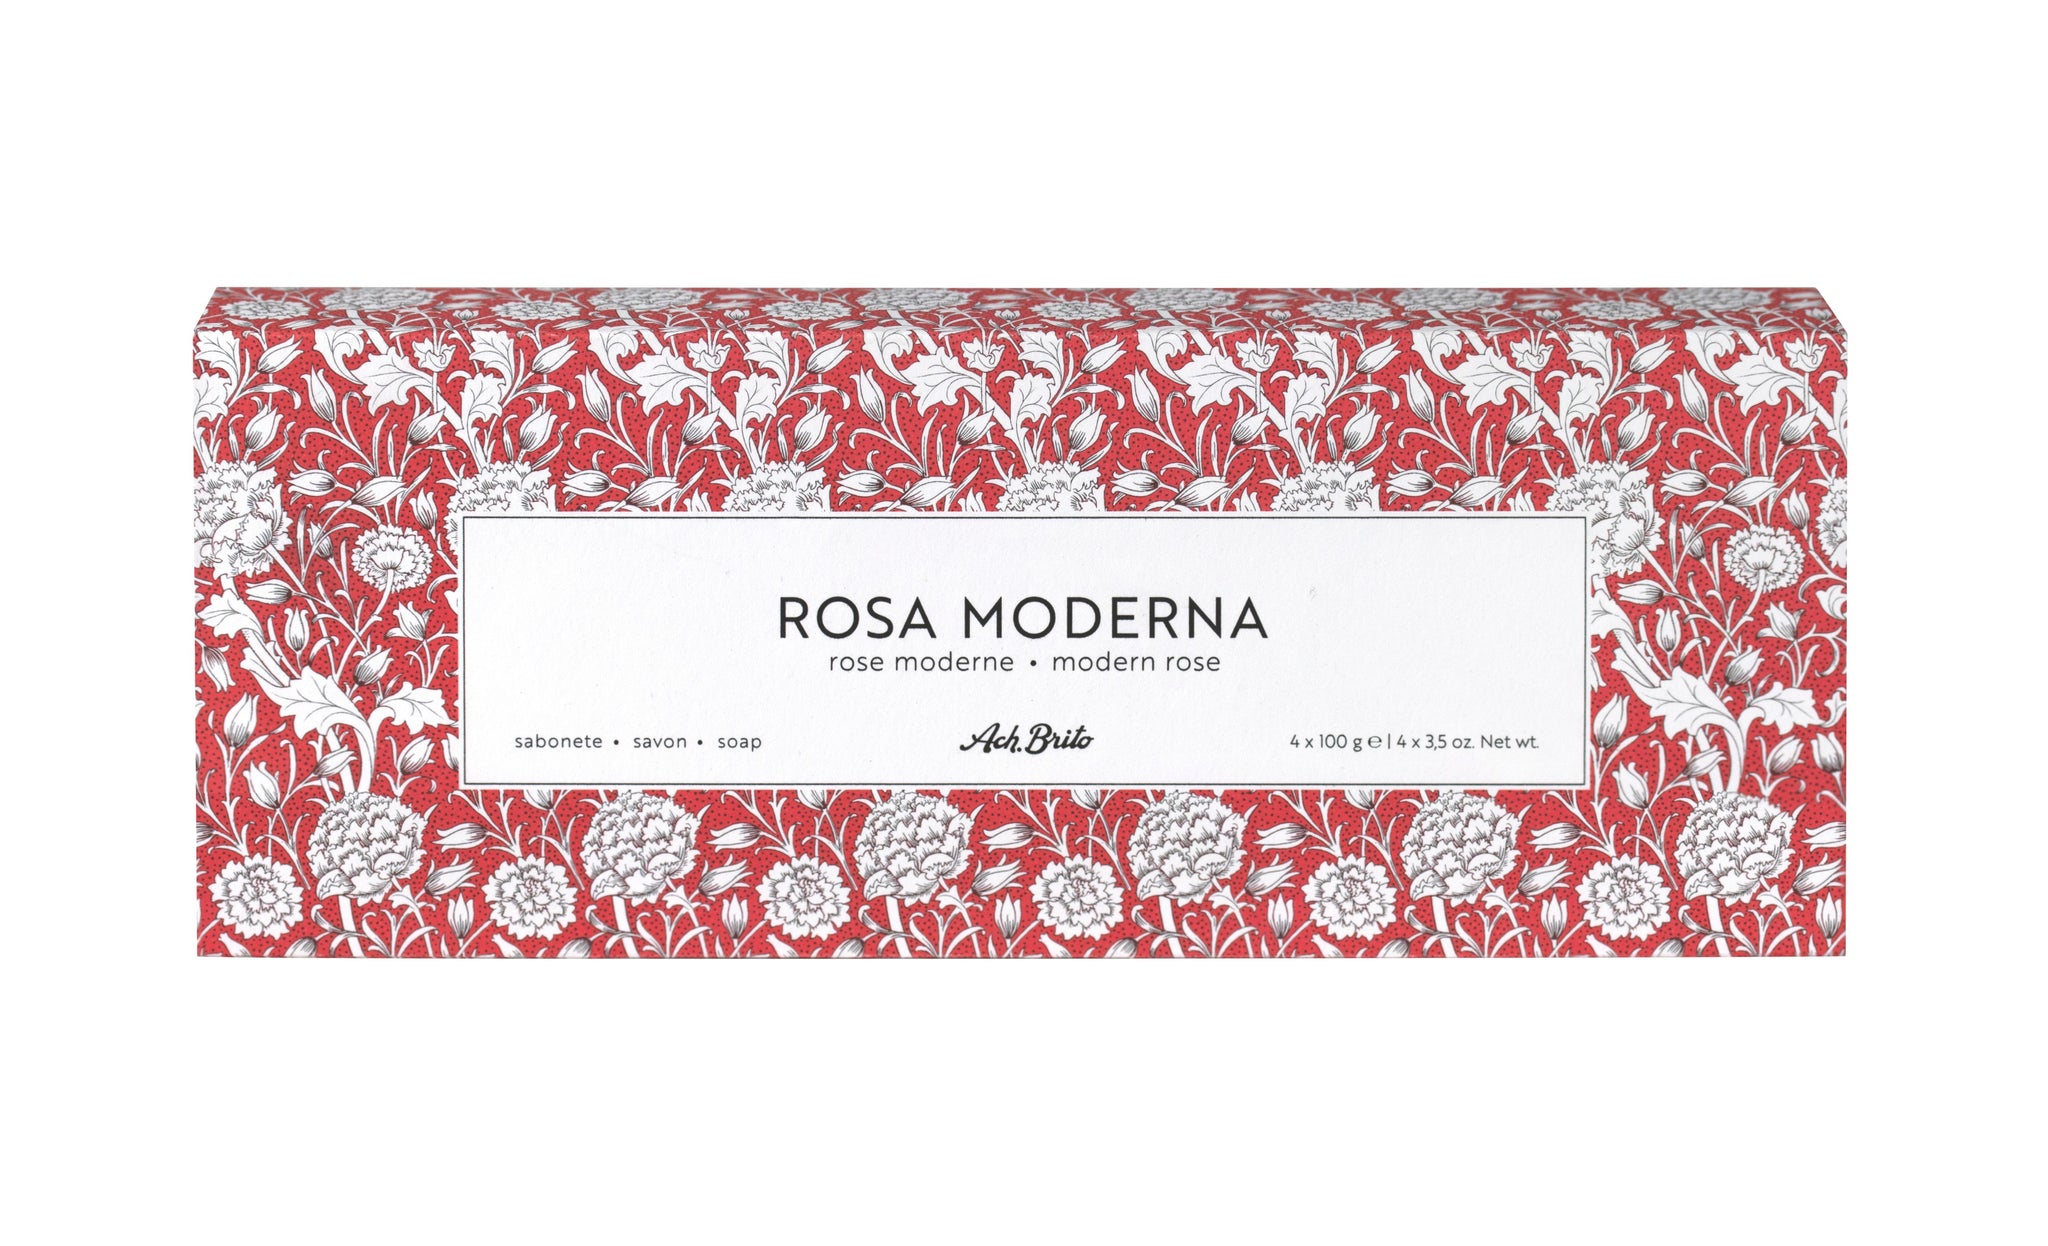 Ach Brito Rosa Moderna Soap Box 4x100g By Ach Brito